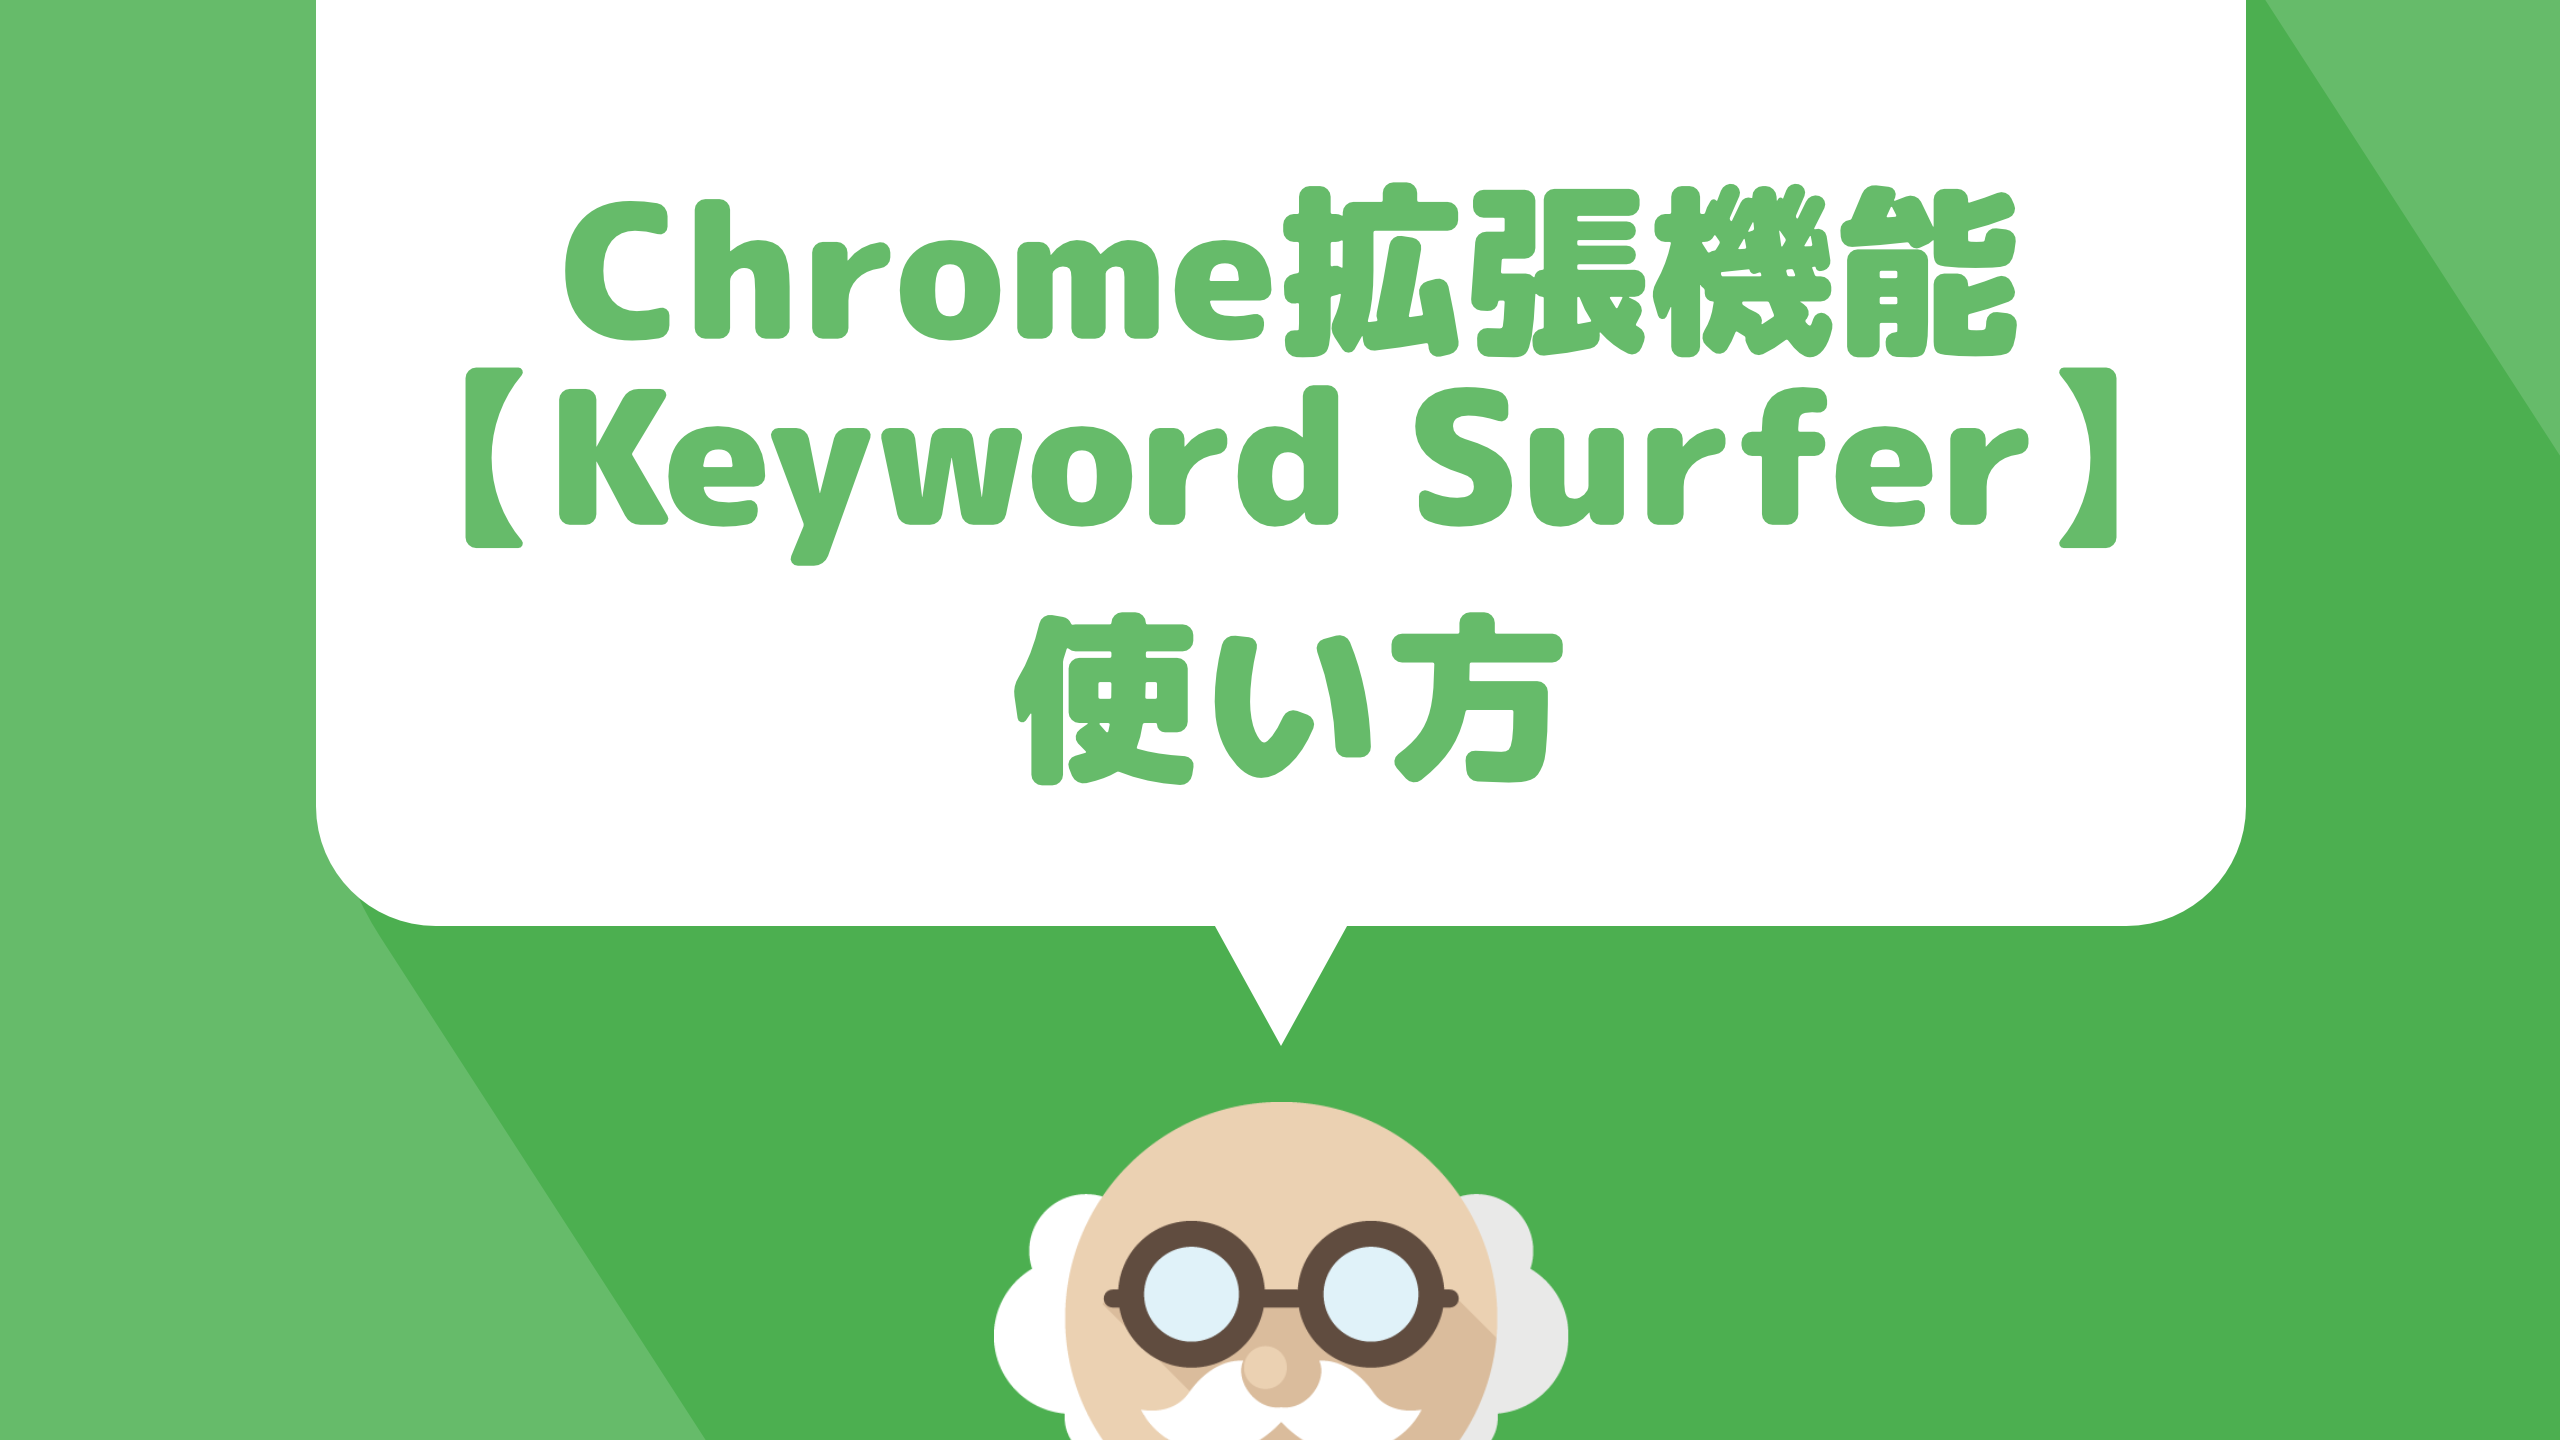 キーワード検索をChrome拡張機能で出来る【Keyword Surfer】の使い方を解説